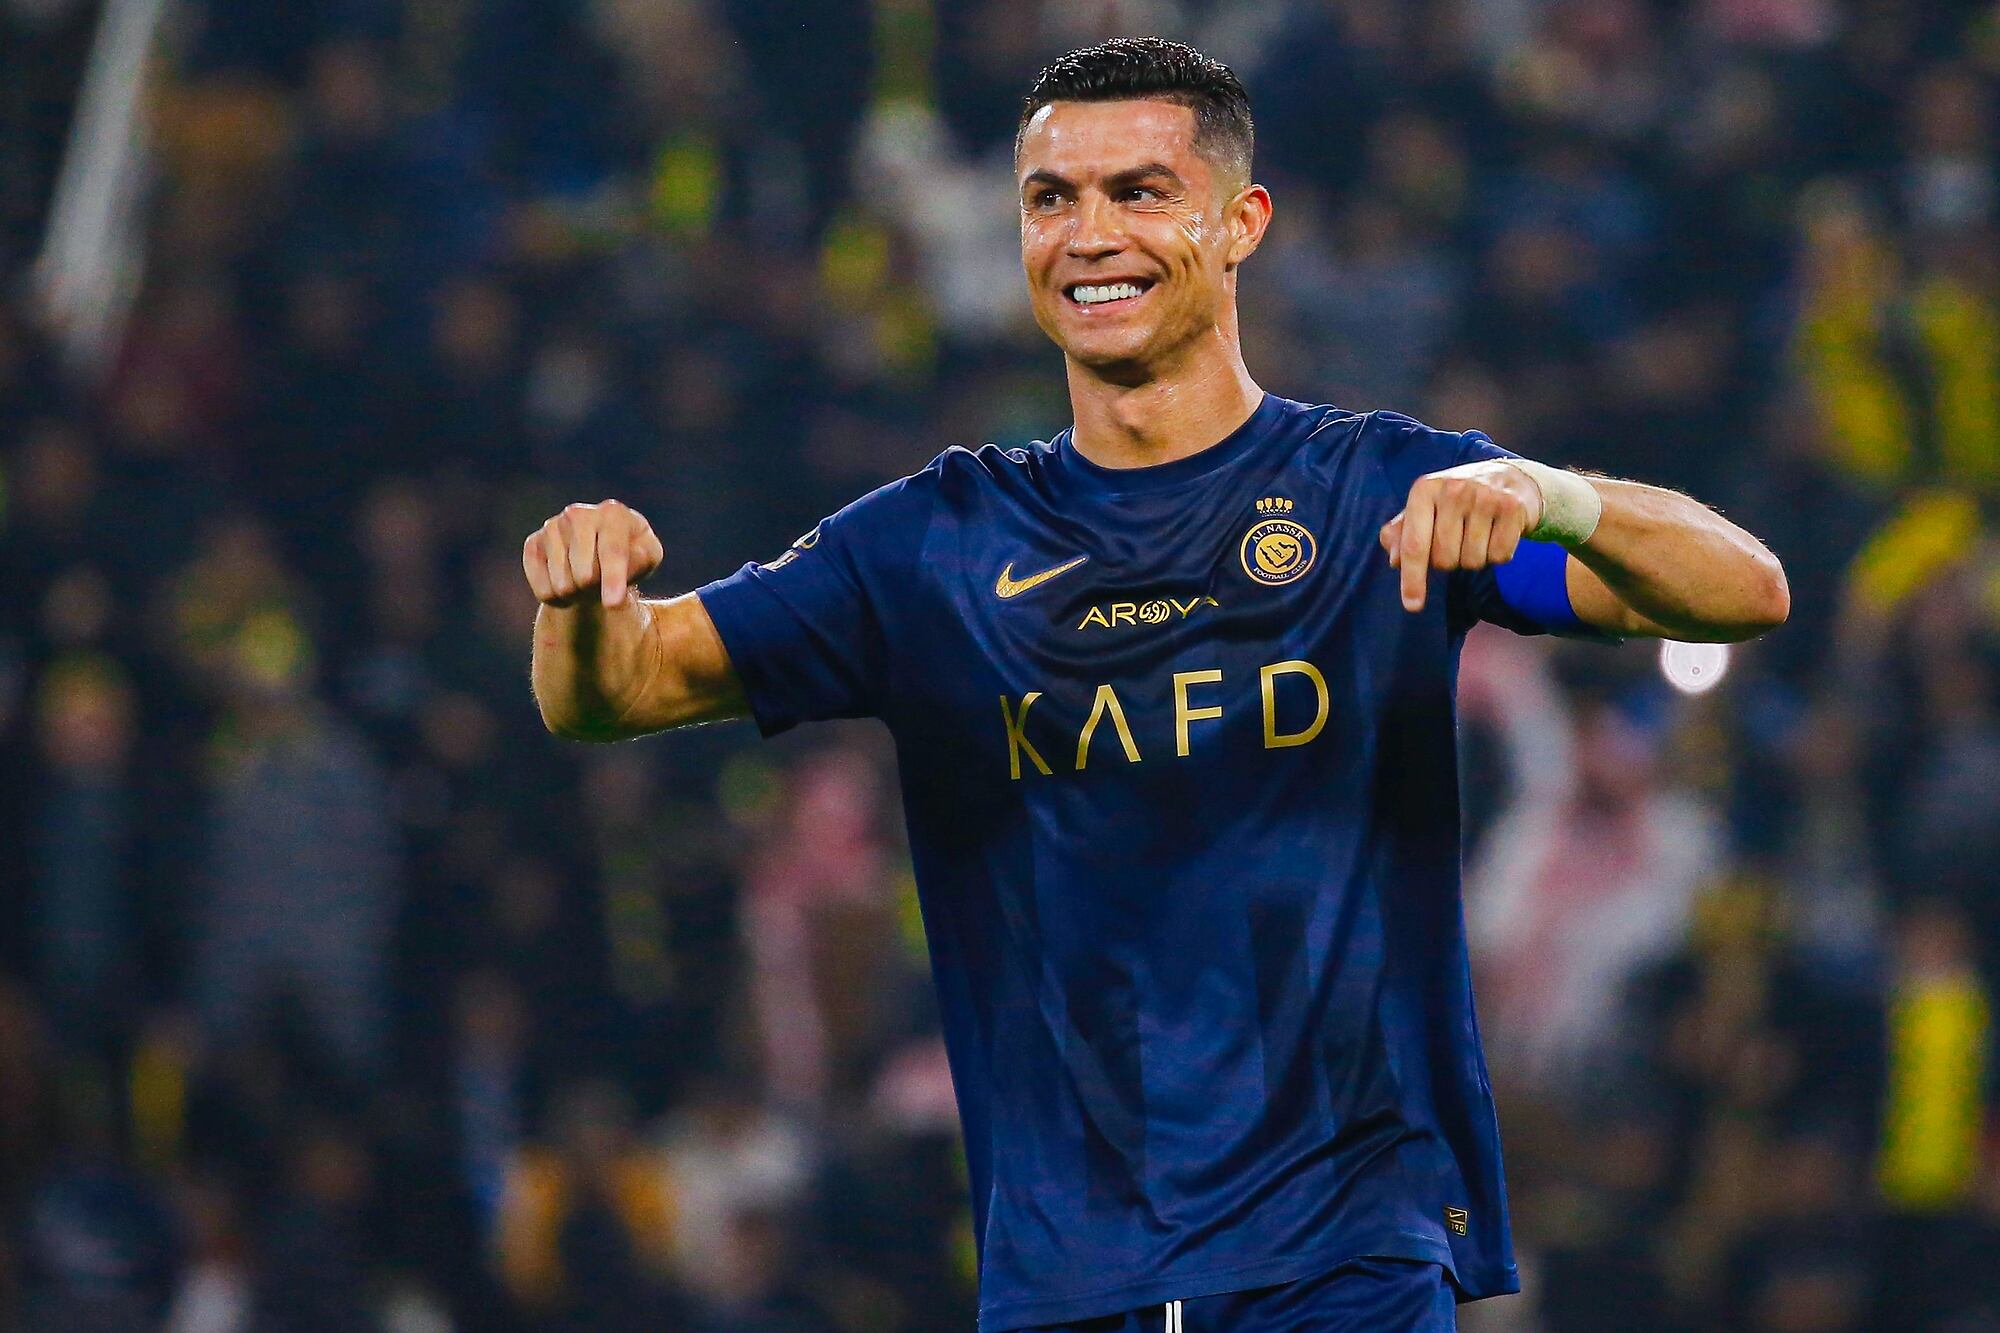 Cristiano Ronaldo sigue festejando goles en Arabia Saudita, pero ya no lucha por la Bota de Oro